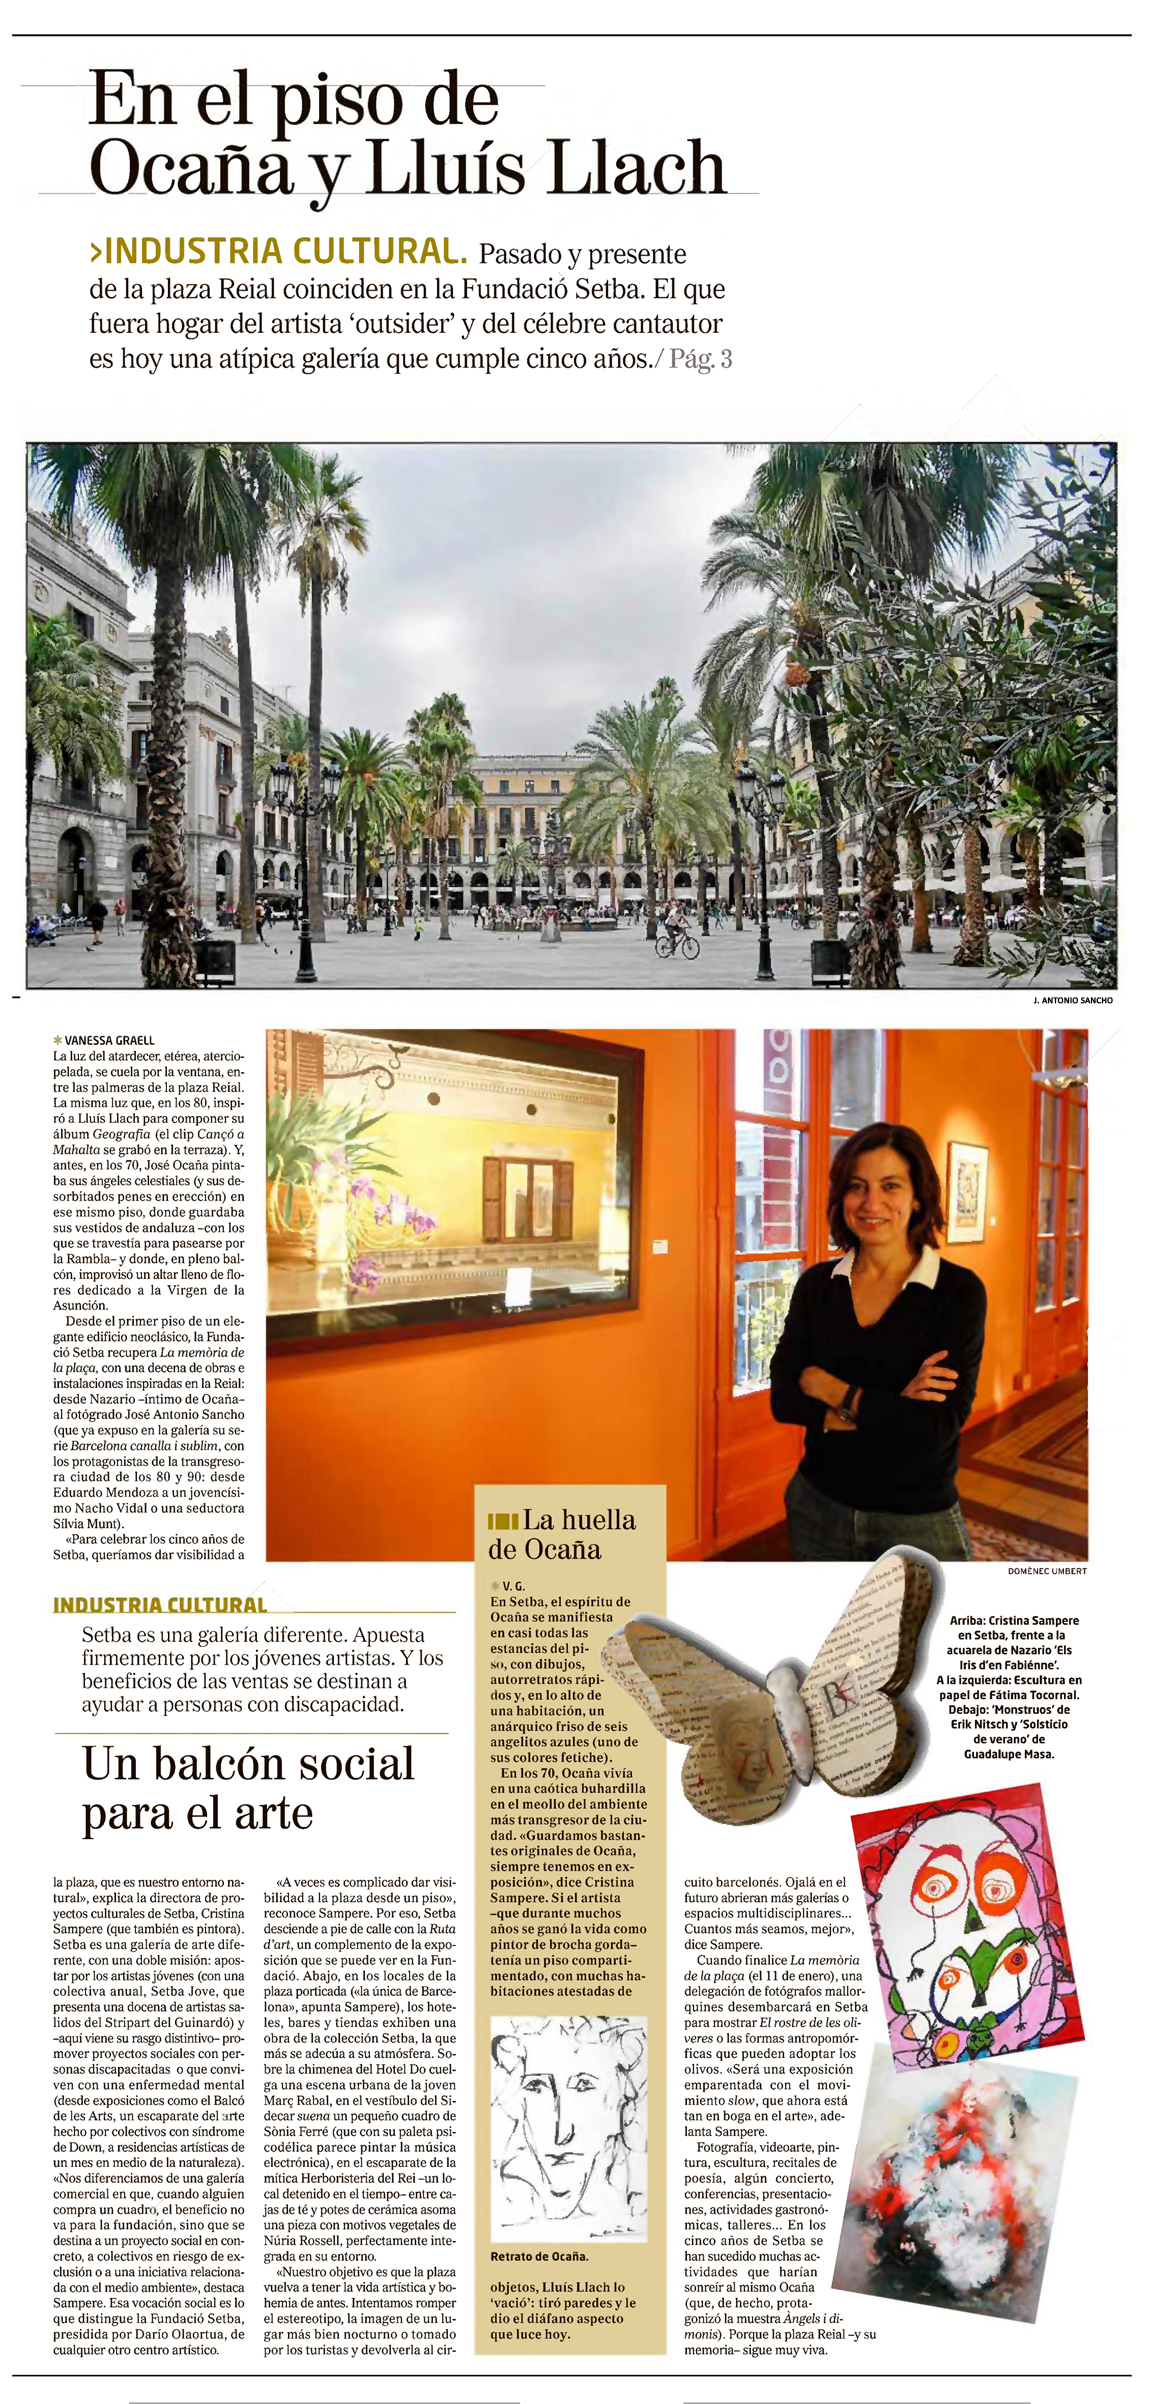 Mundo (Catalunya) (Paginas Especiales) (El) N° 121220 - 20/12/20